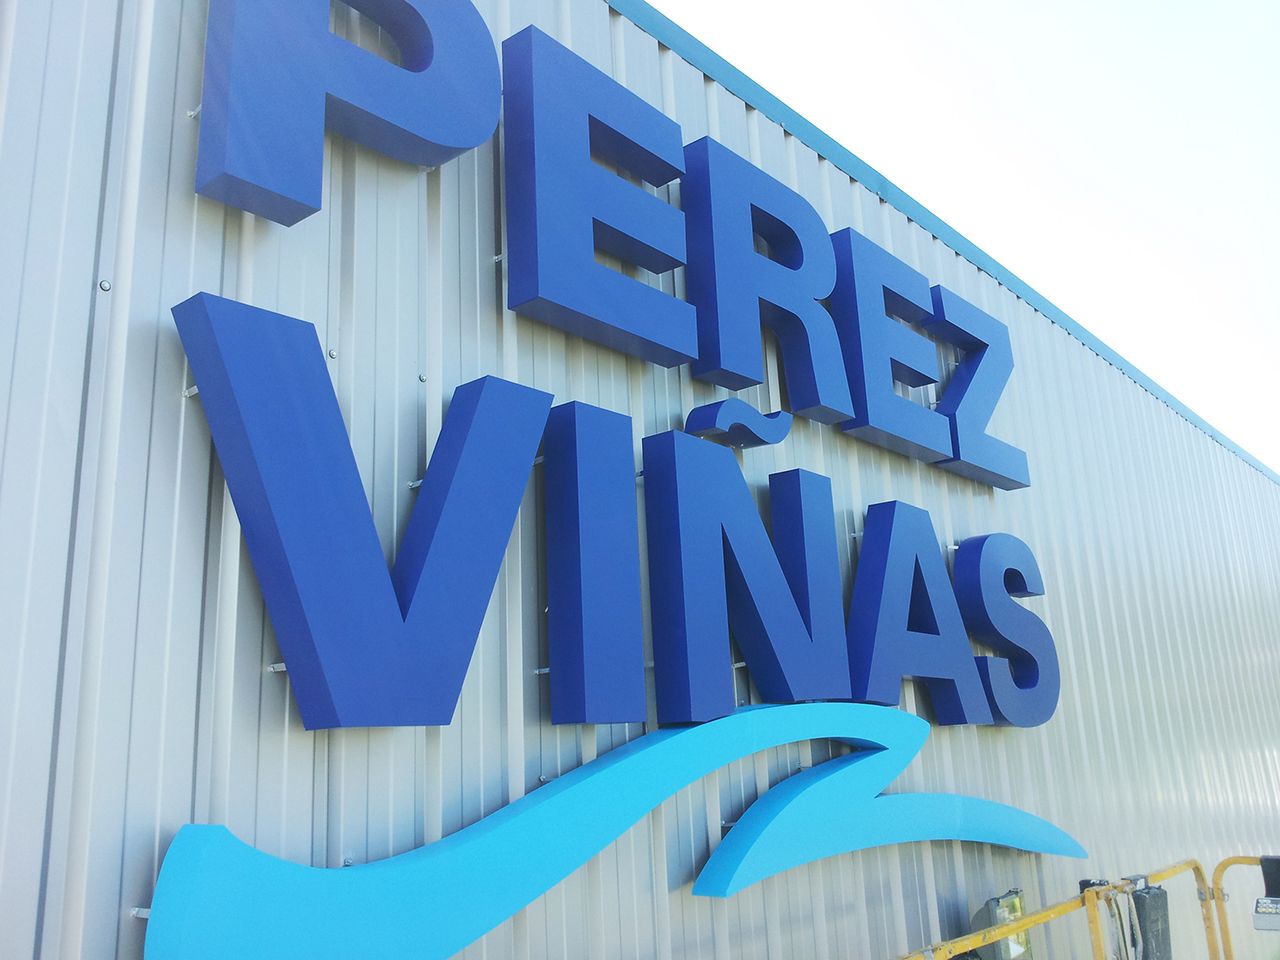 Letras 3D iluminadas para fachada de nave industrial Pérez Viñas